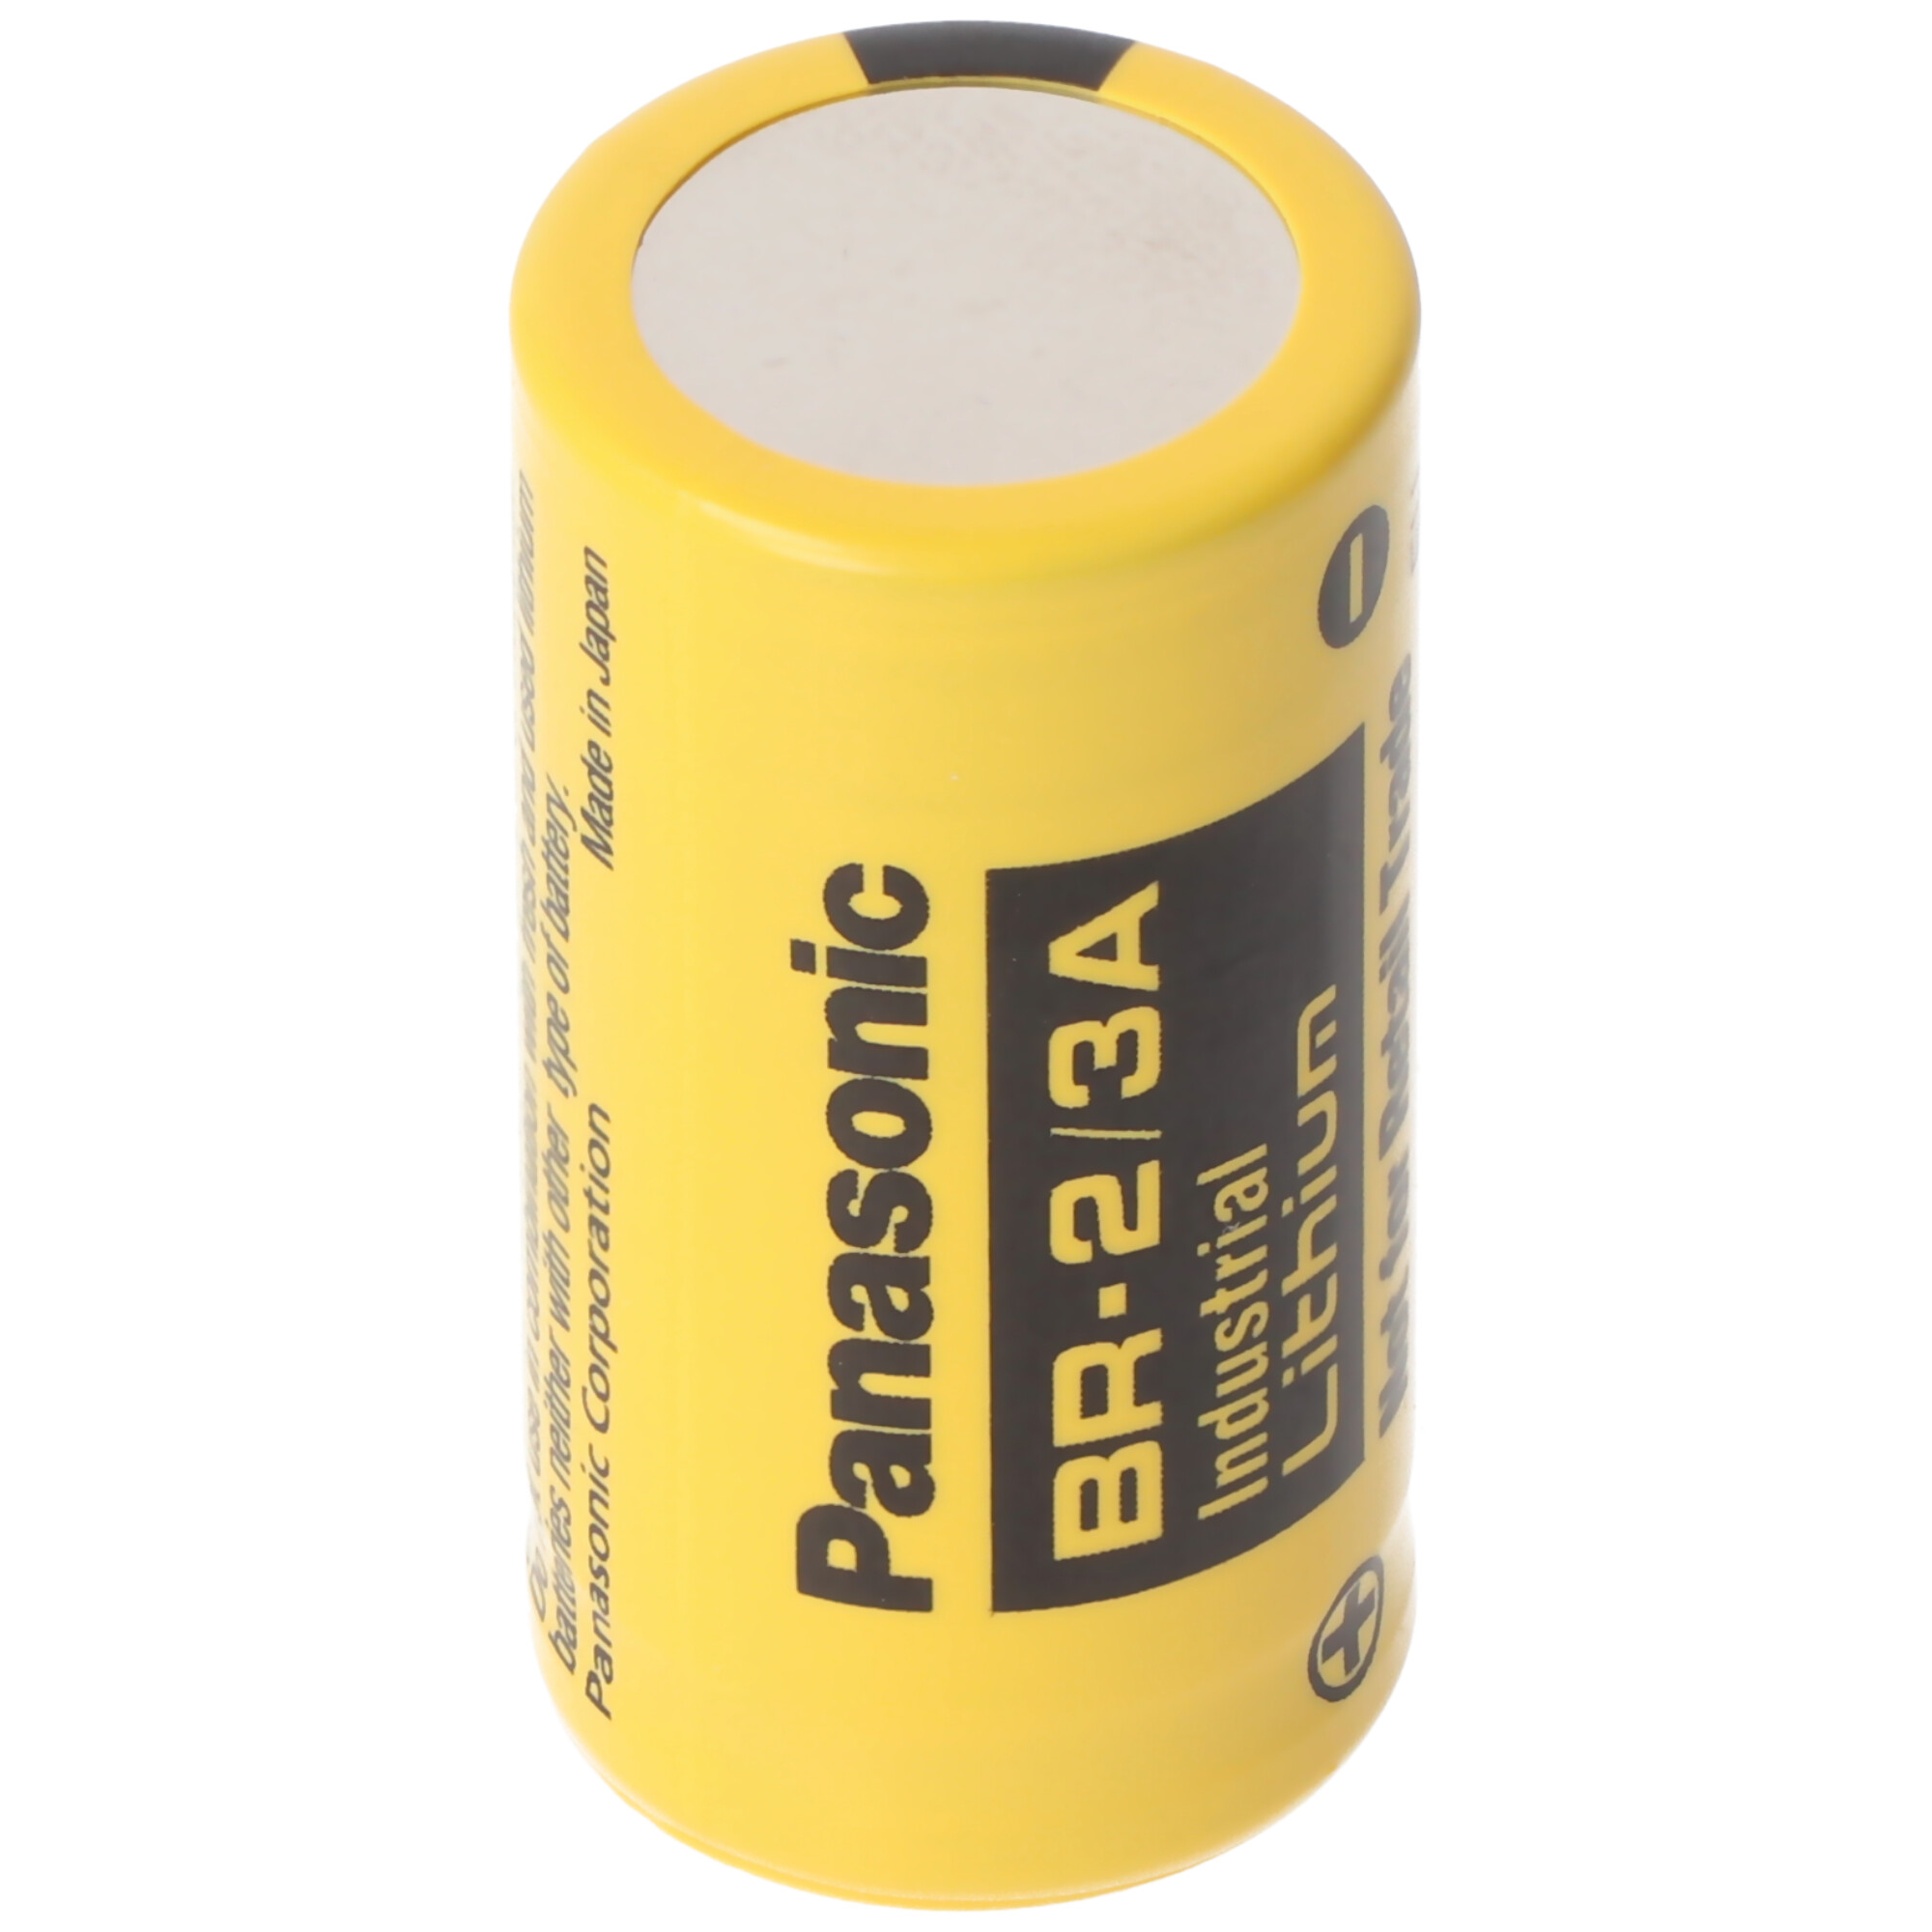 BR-2/3 A Panasonic Lithium Batterie ohne Lötfahne, 3,0 Volt